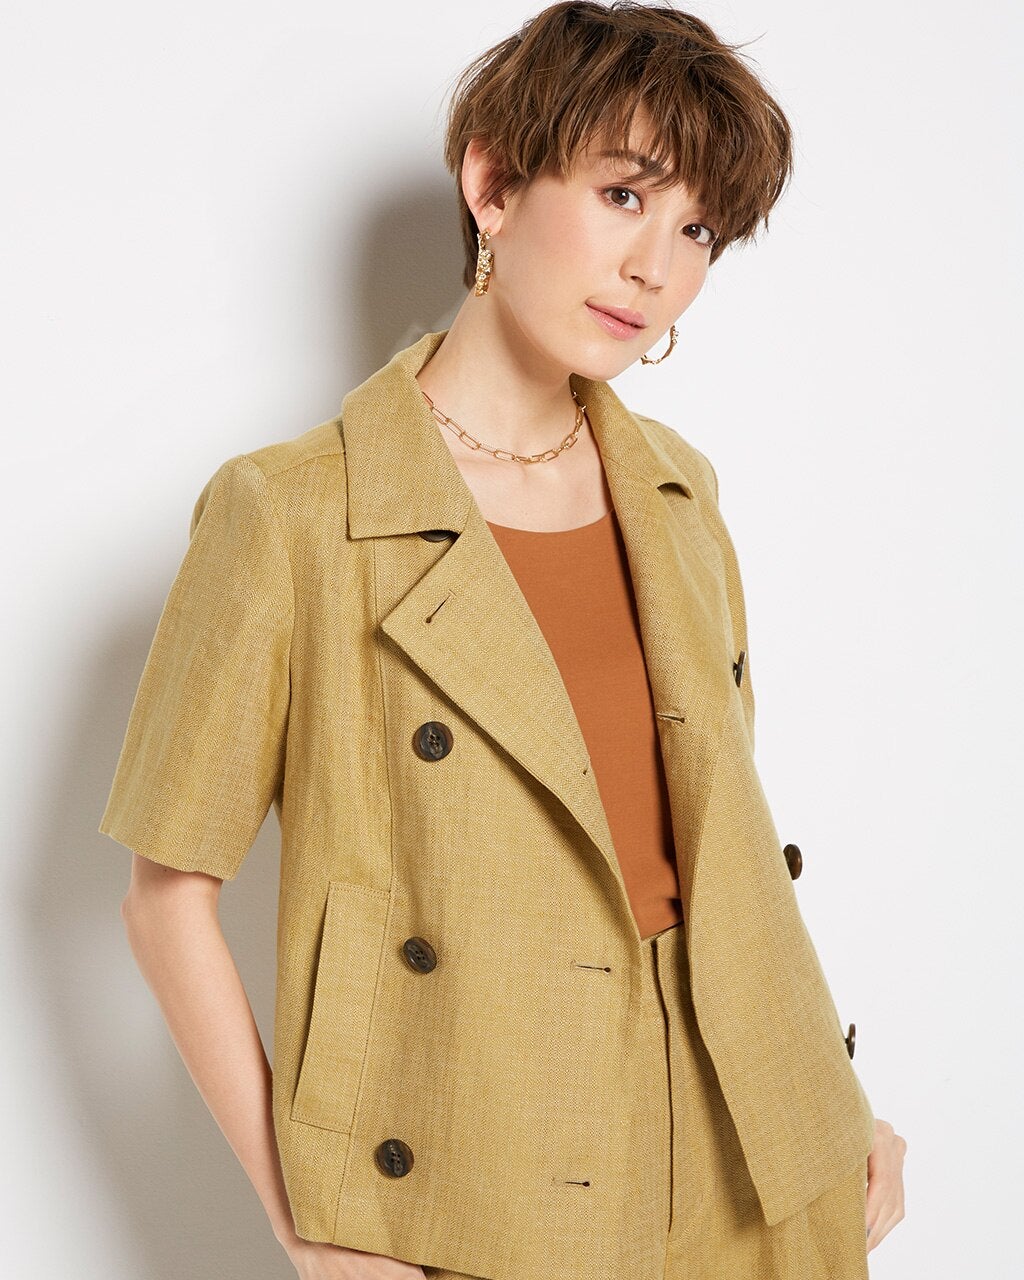 極リネン・五分袖ジャケット/40代50代からのレディースファッション